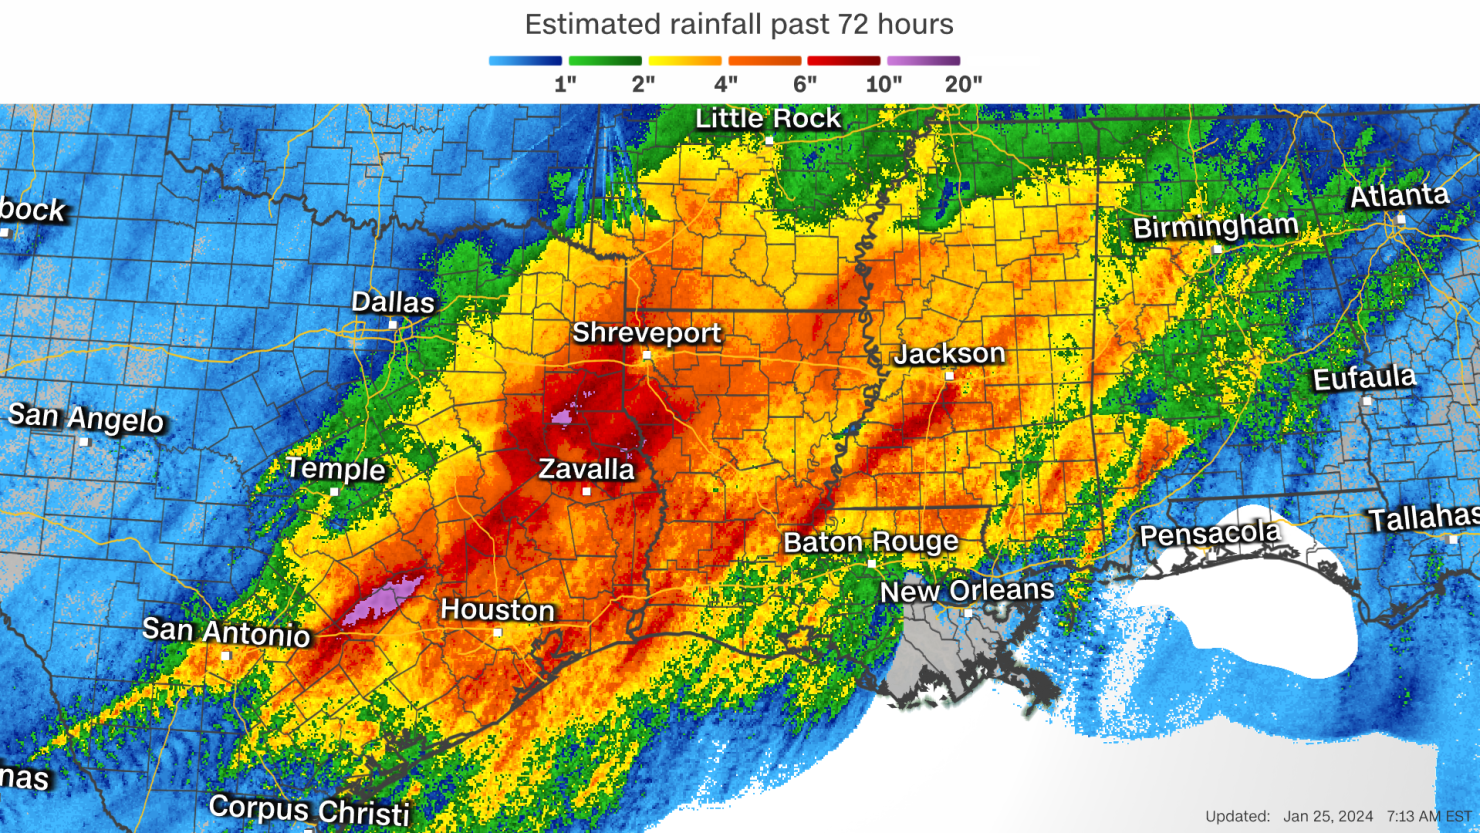 High-water spots across Houston area